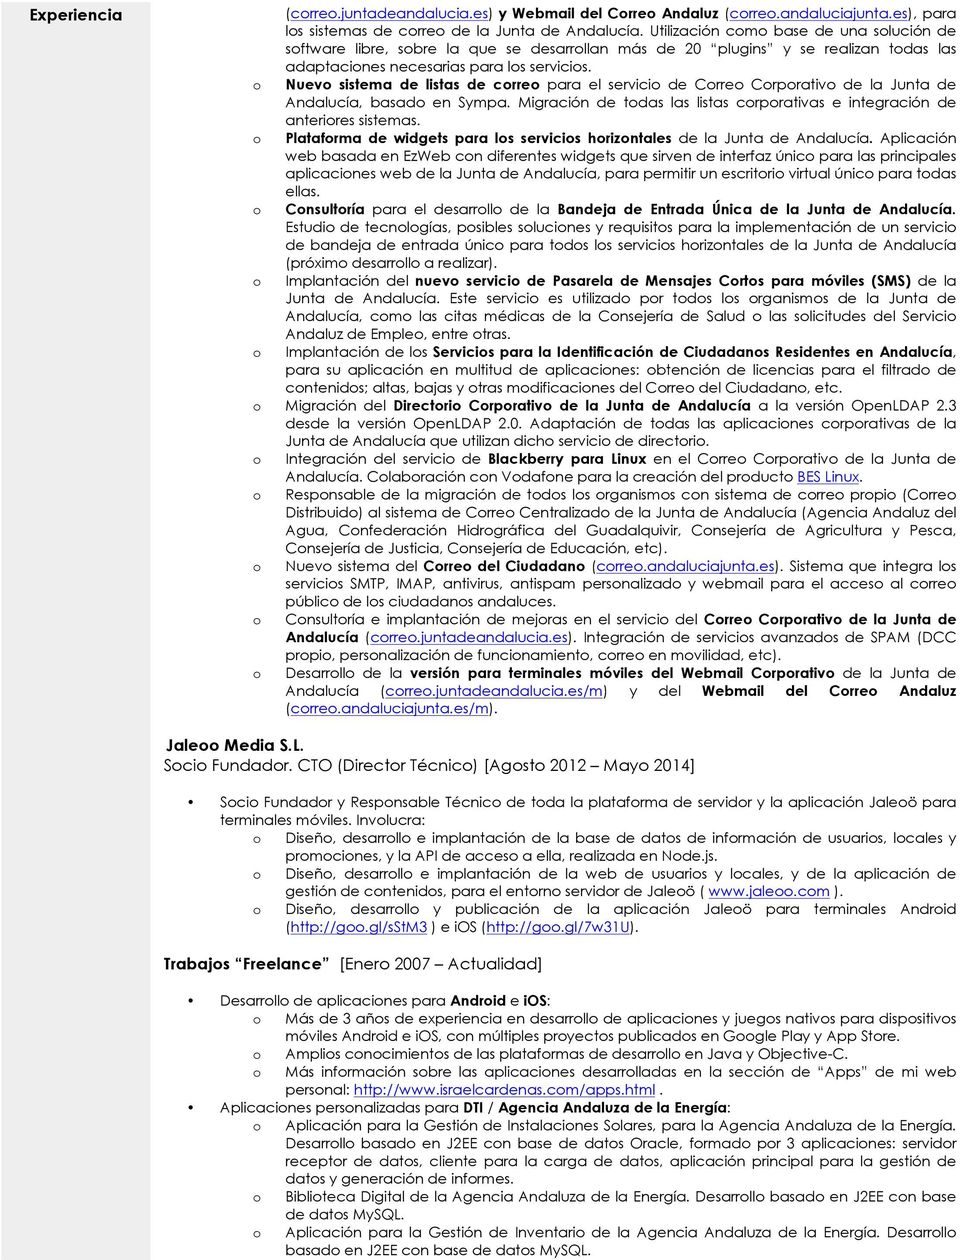 Nuev sistema de listas de crre para el servici de Crre Crprativ de la Junta de Andalucía, basad en Sympa. Migración de tdas las listas crprativas e integración de anterires sistemas.